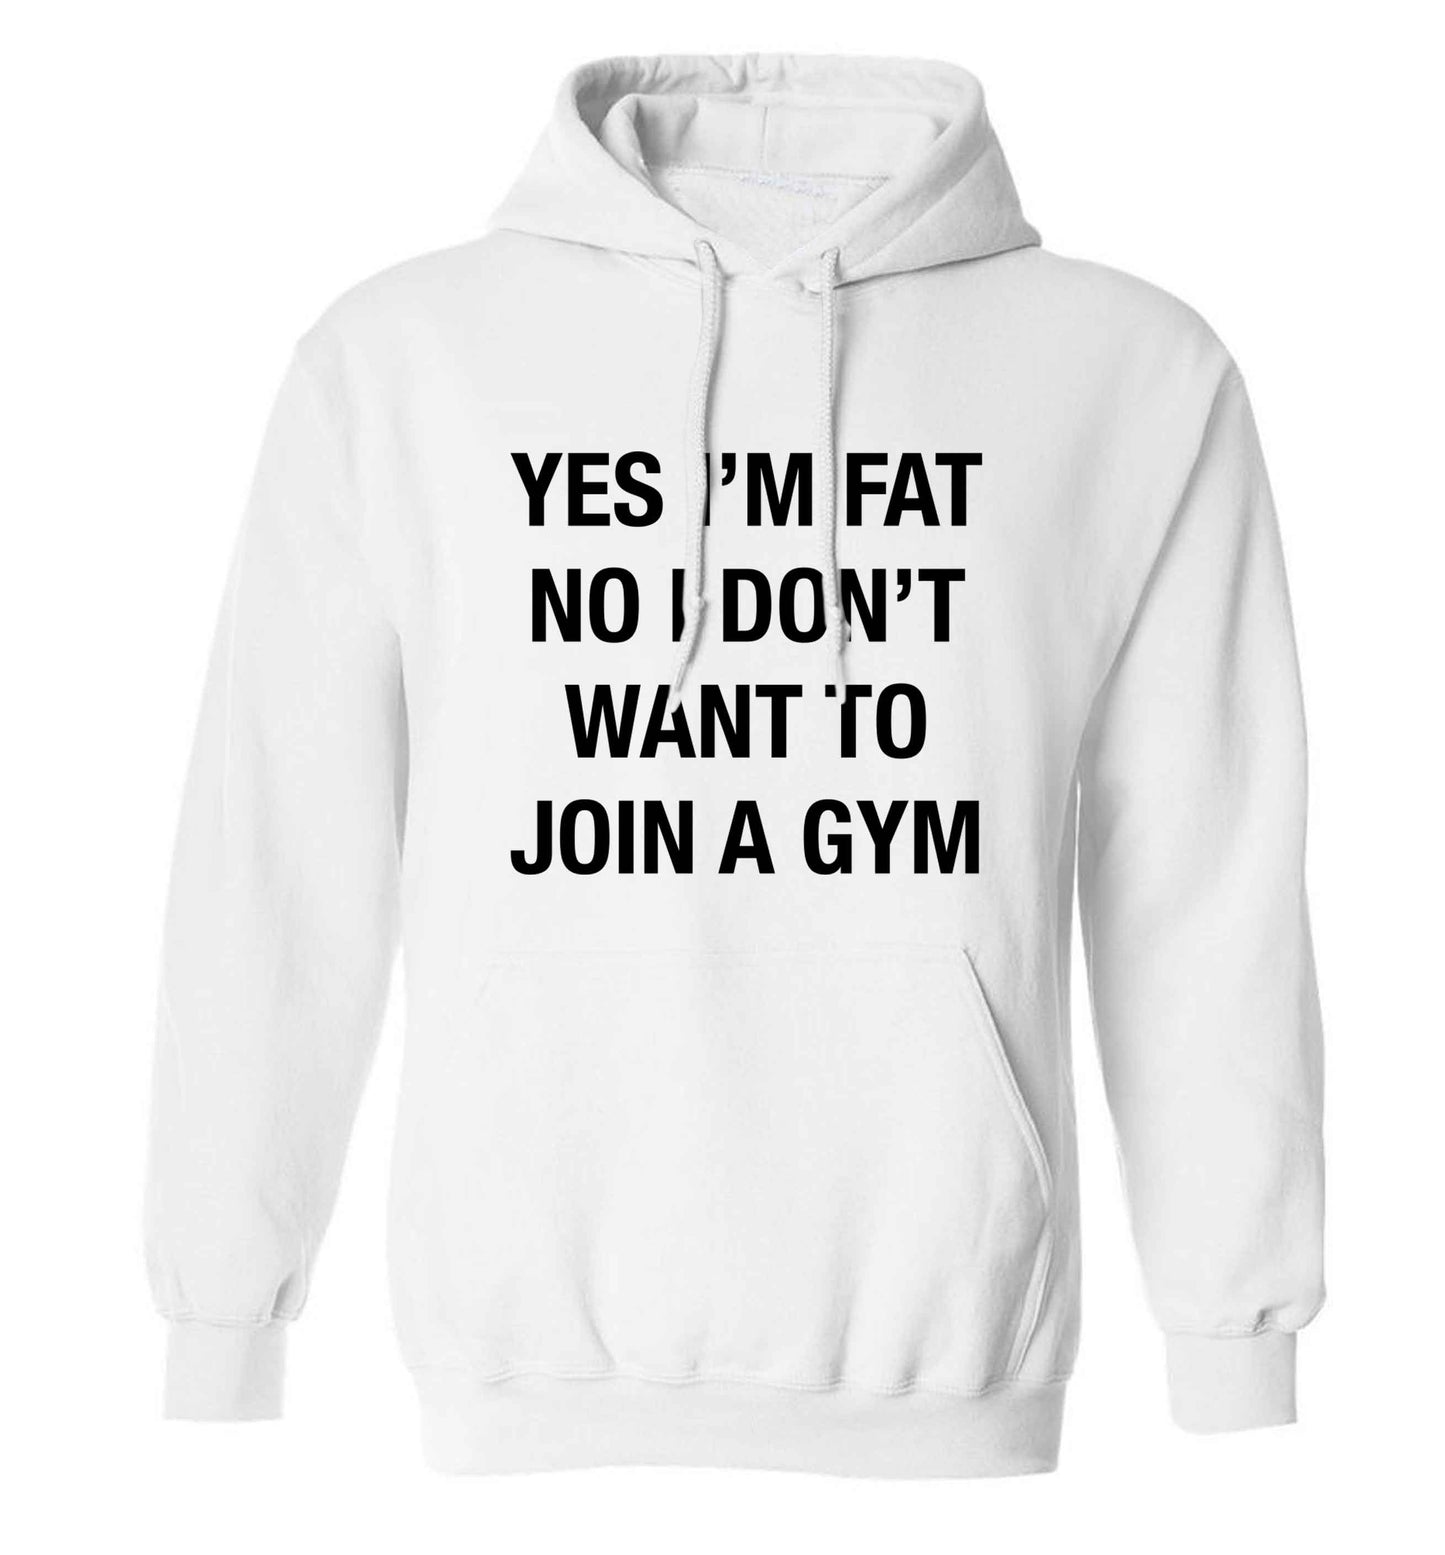 Yes I'm fat, no I don't want to go to the gym adults unisex white hoodie 2XL